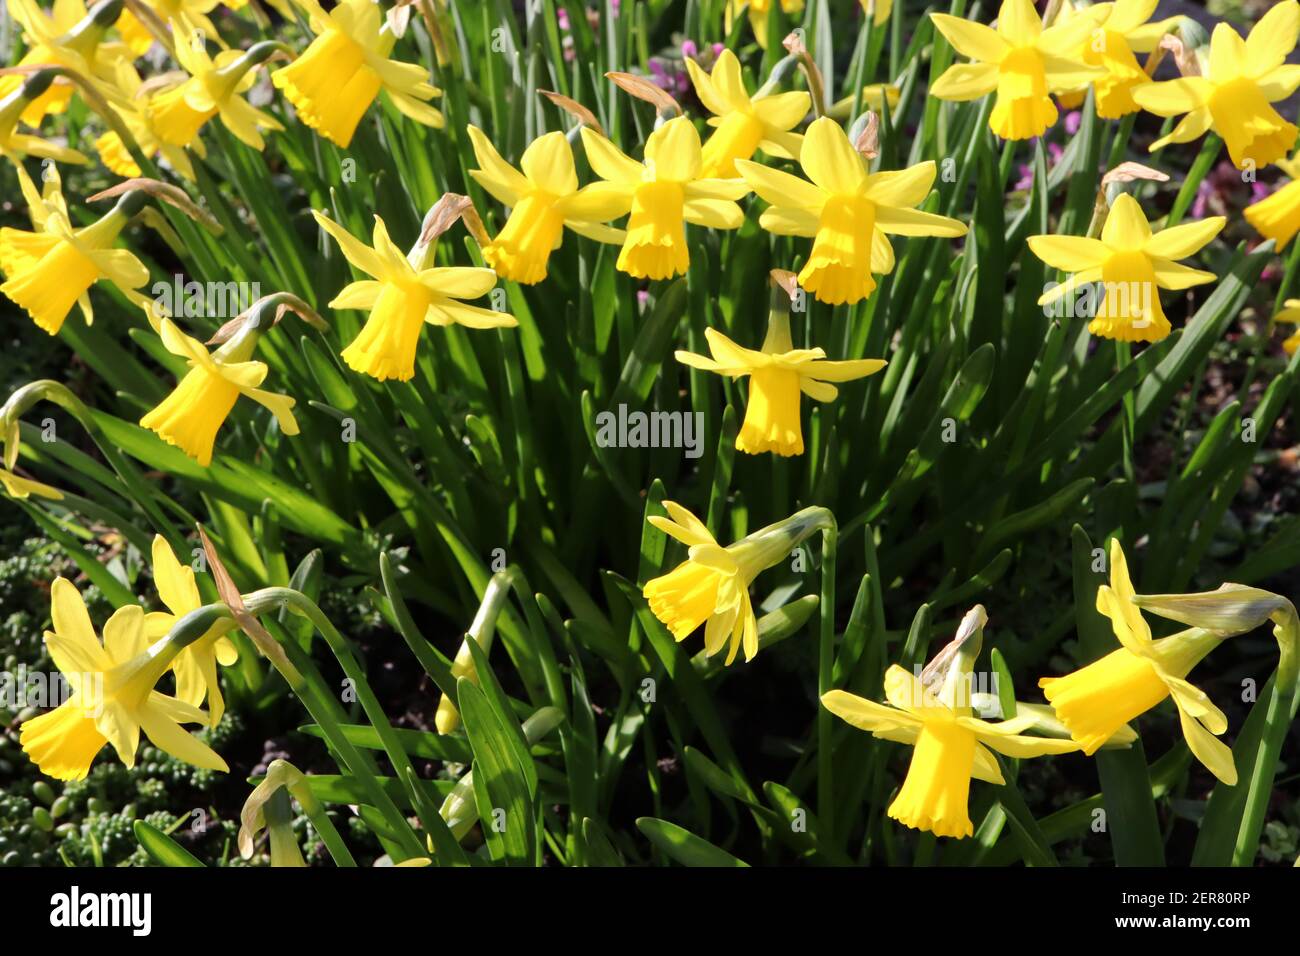 Narcissus ‘Febbraio Gold’ / Daffodil Febbraio Gold Division 6 Cyclamineus Daffodils giallo con coppe frilly, febbraio, Inghilterra, Regno Unito Foto Stock